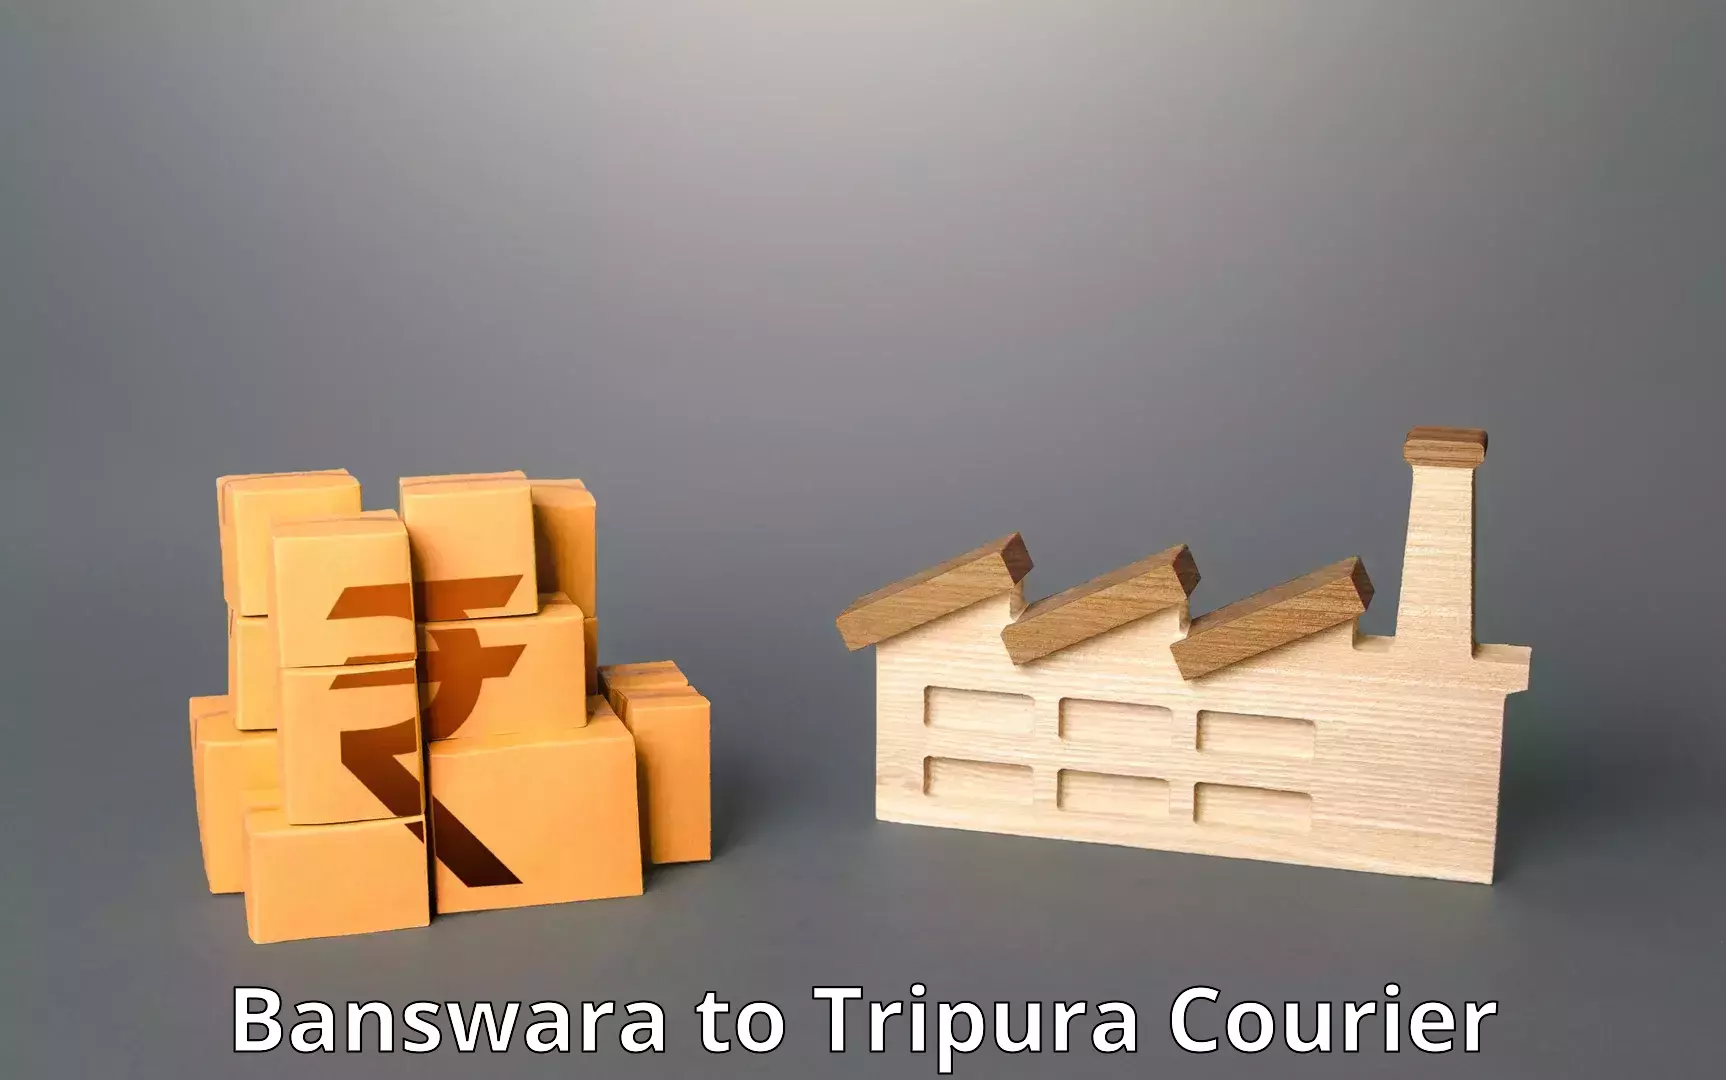 Package tracking Banswara to Udaipur Tripura